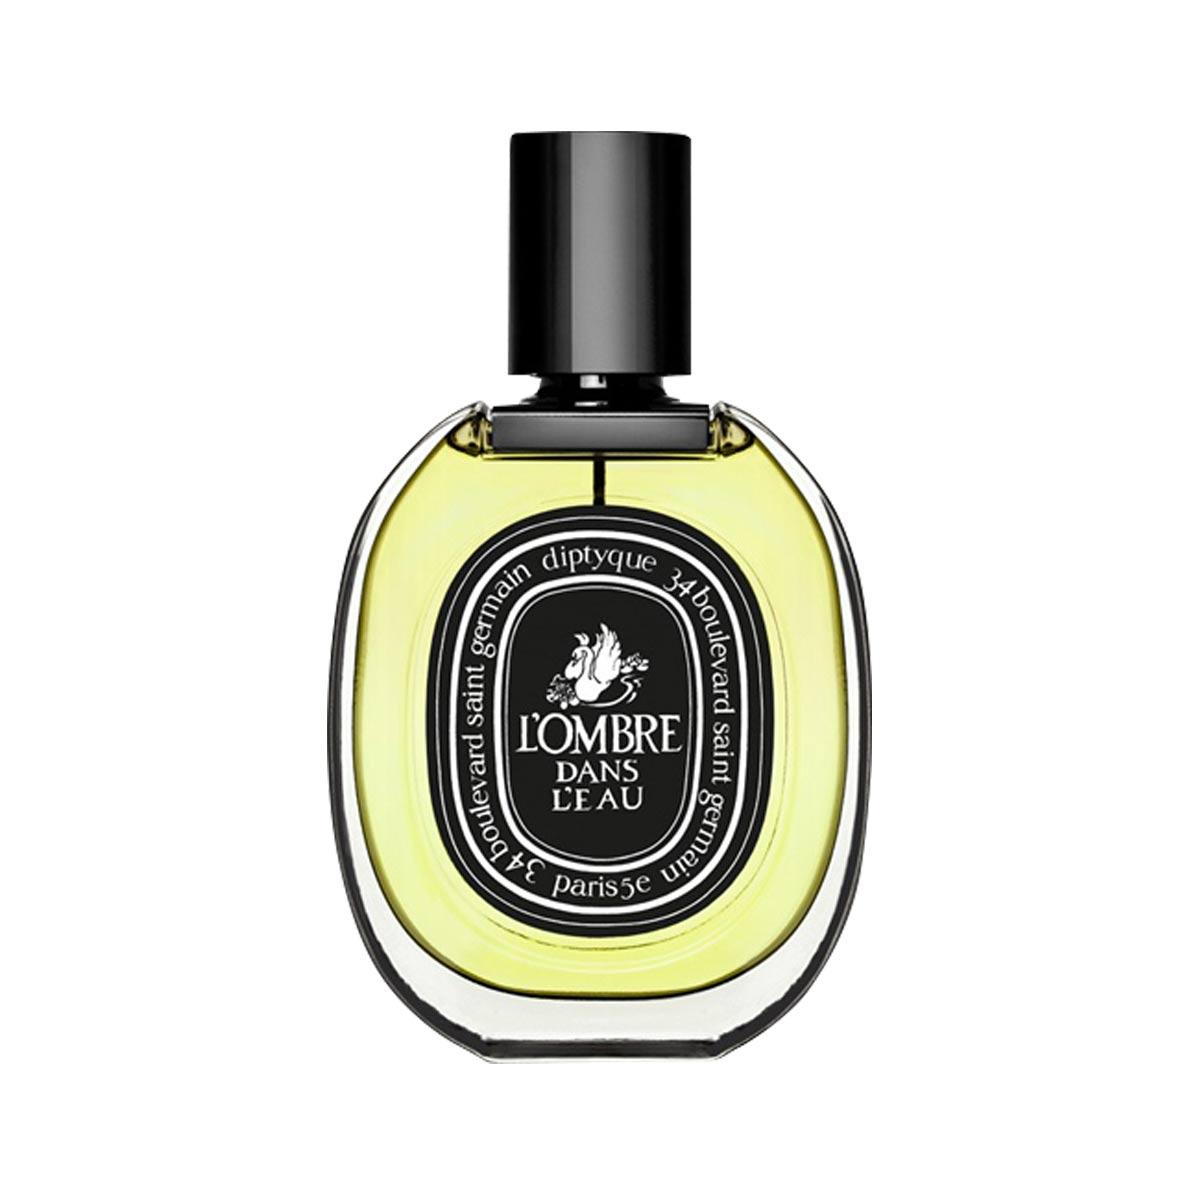 Primary image of L'Ombre Dans L'Eau Eau de Parfum